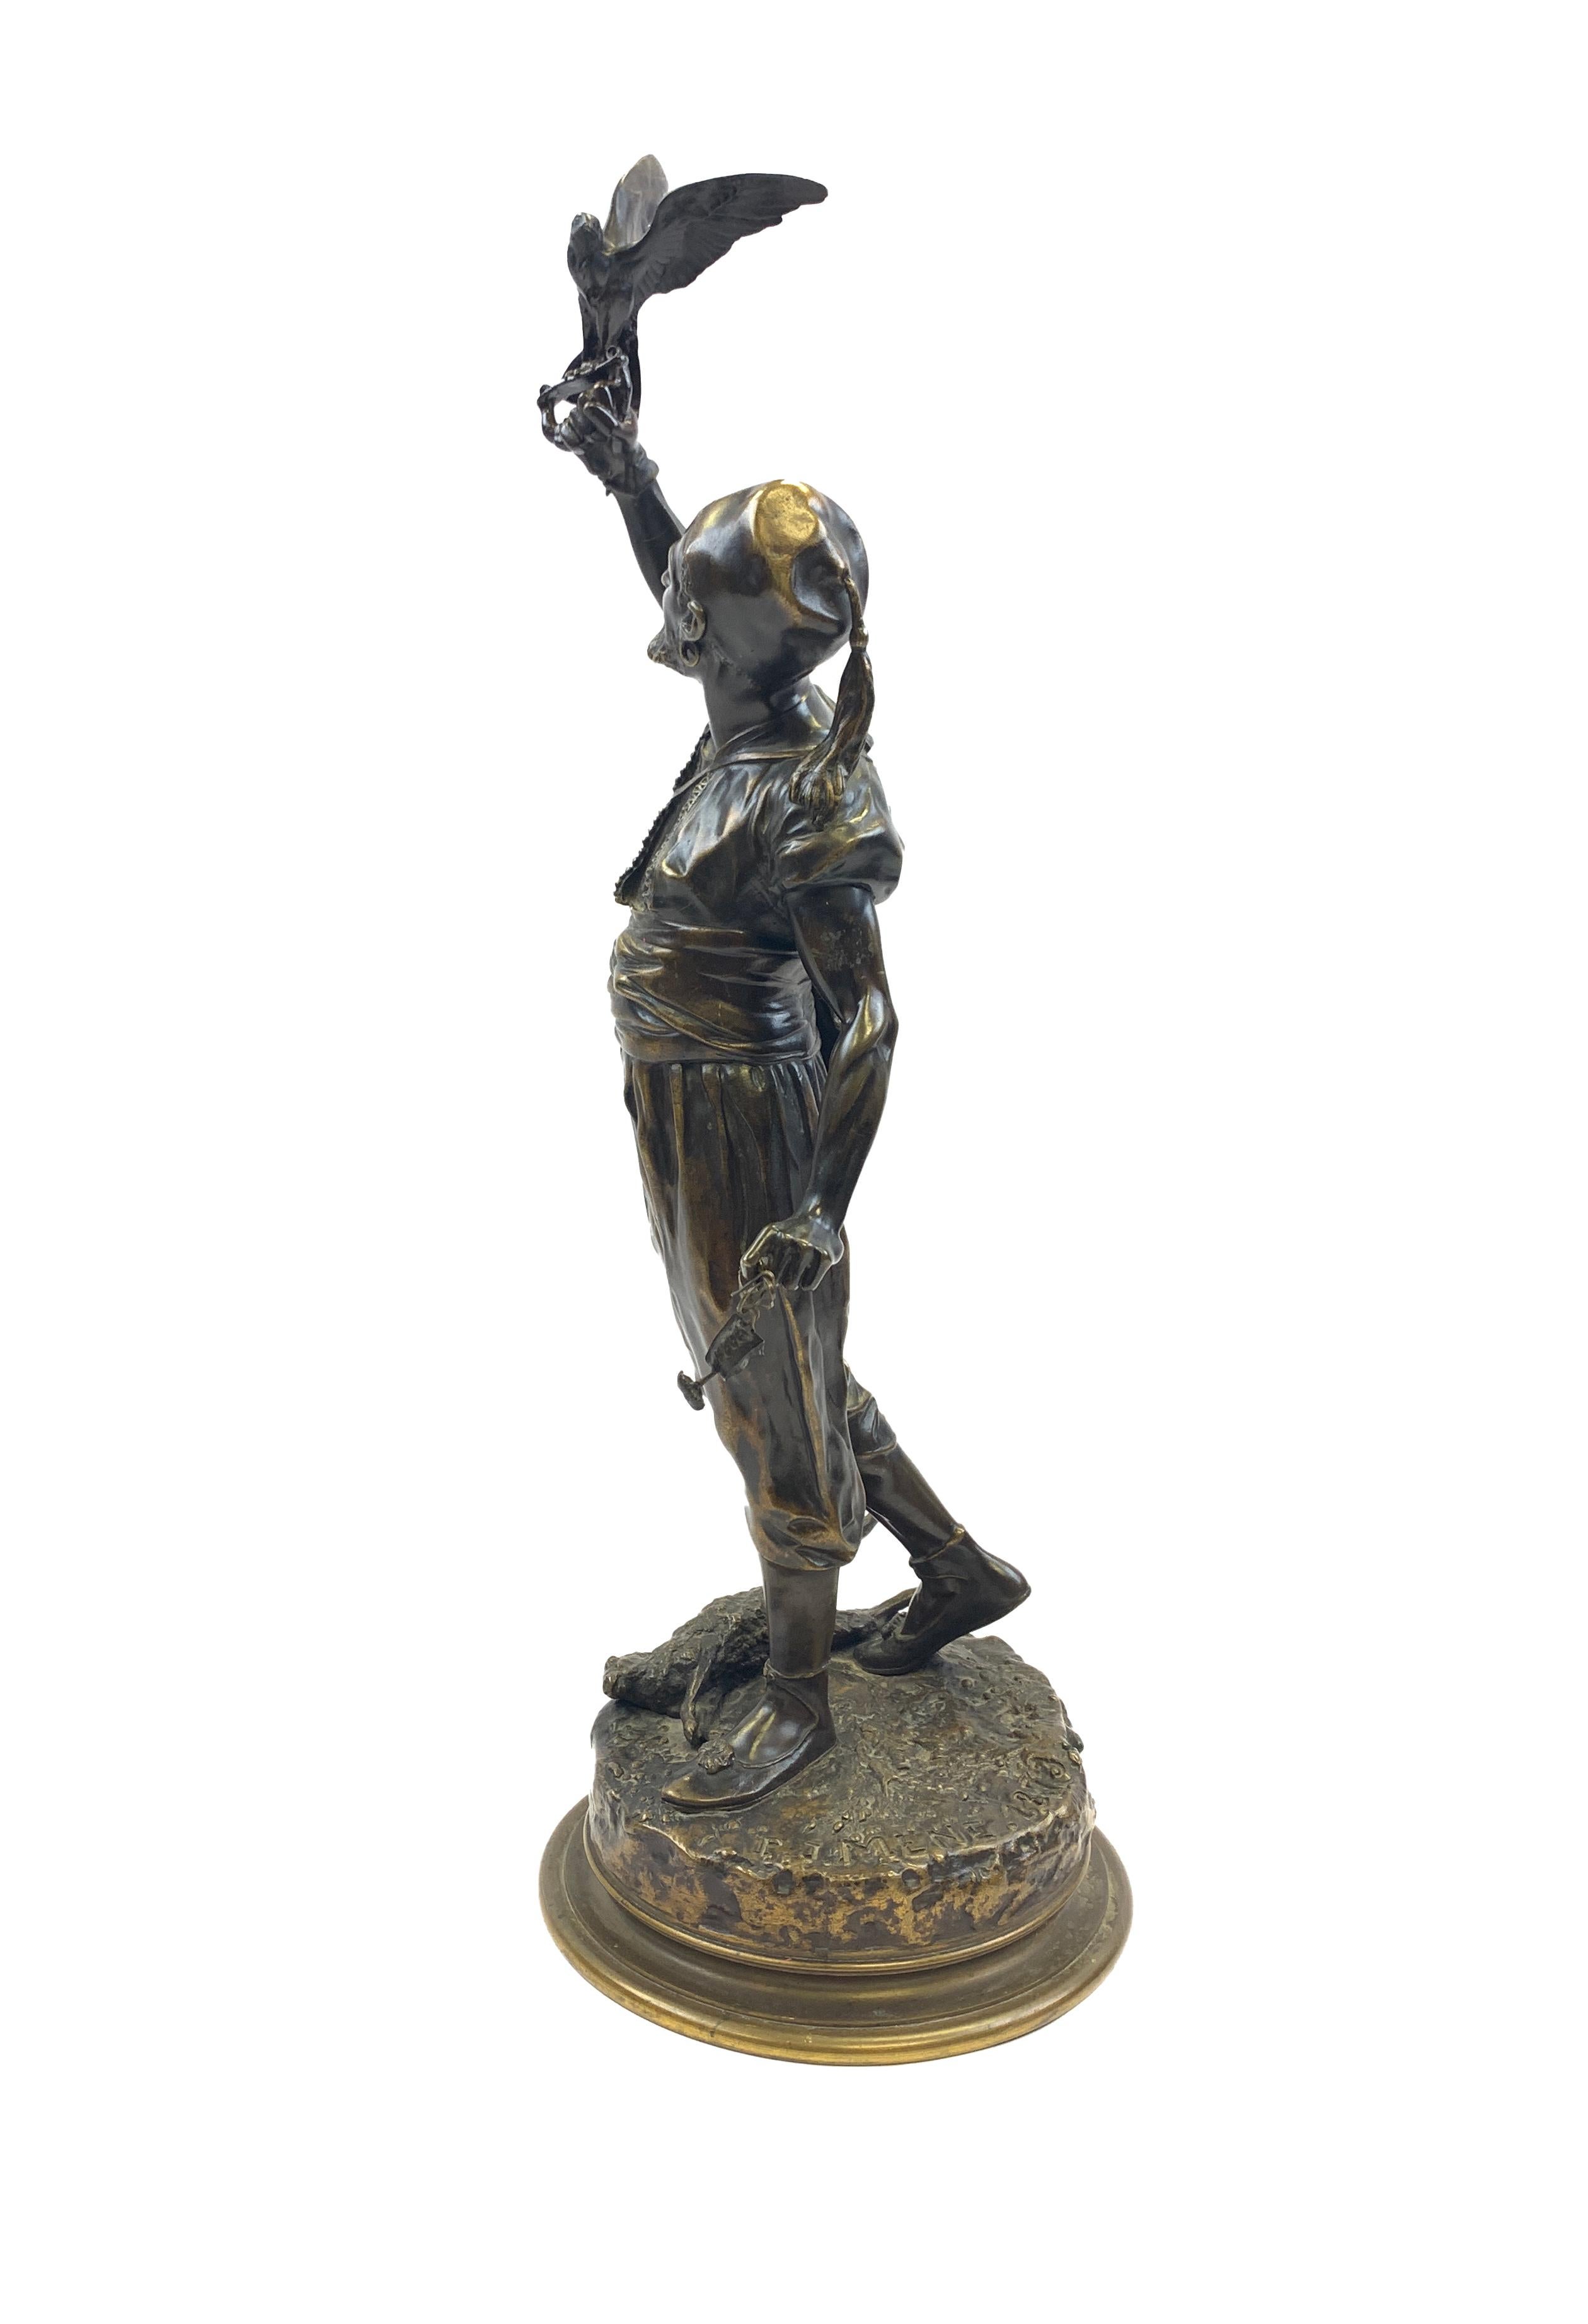 Sculpture en bronze à patine brune, représentant un homme et son faucon, signée P.J Mene & datée 1873 sur la base ronde.